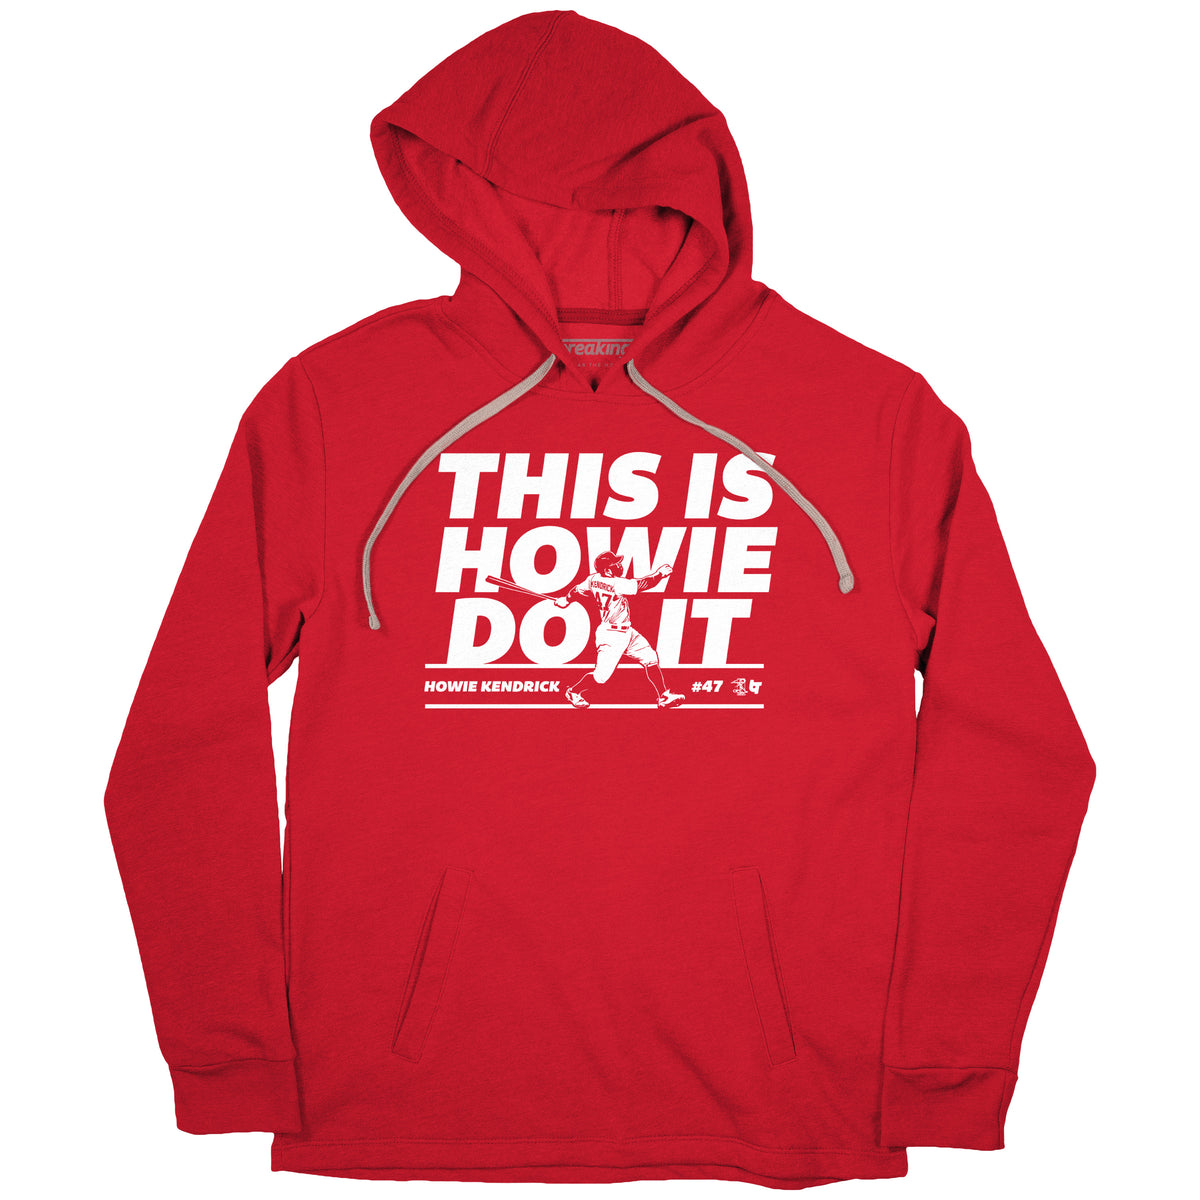 Howie Kendrick Shirt - This Is Howie Do It, MLBPA Licensed - BreakingT